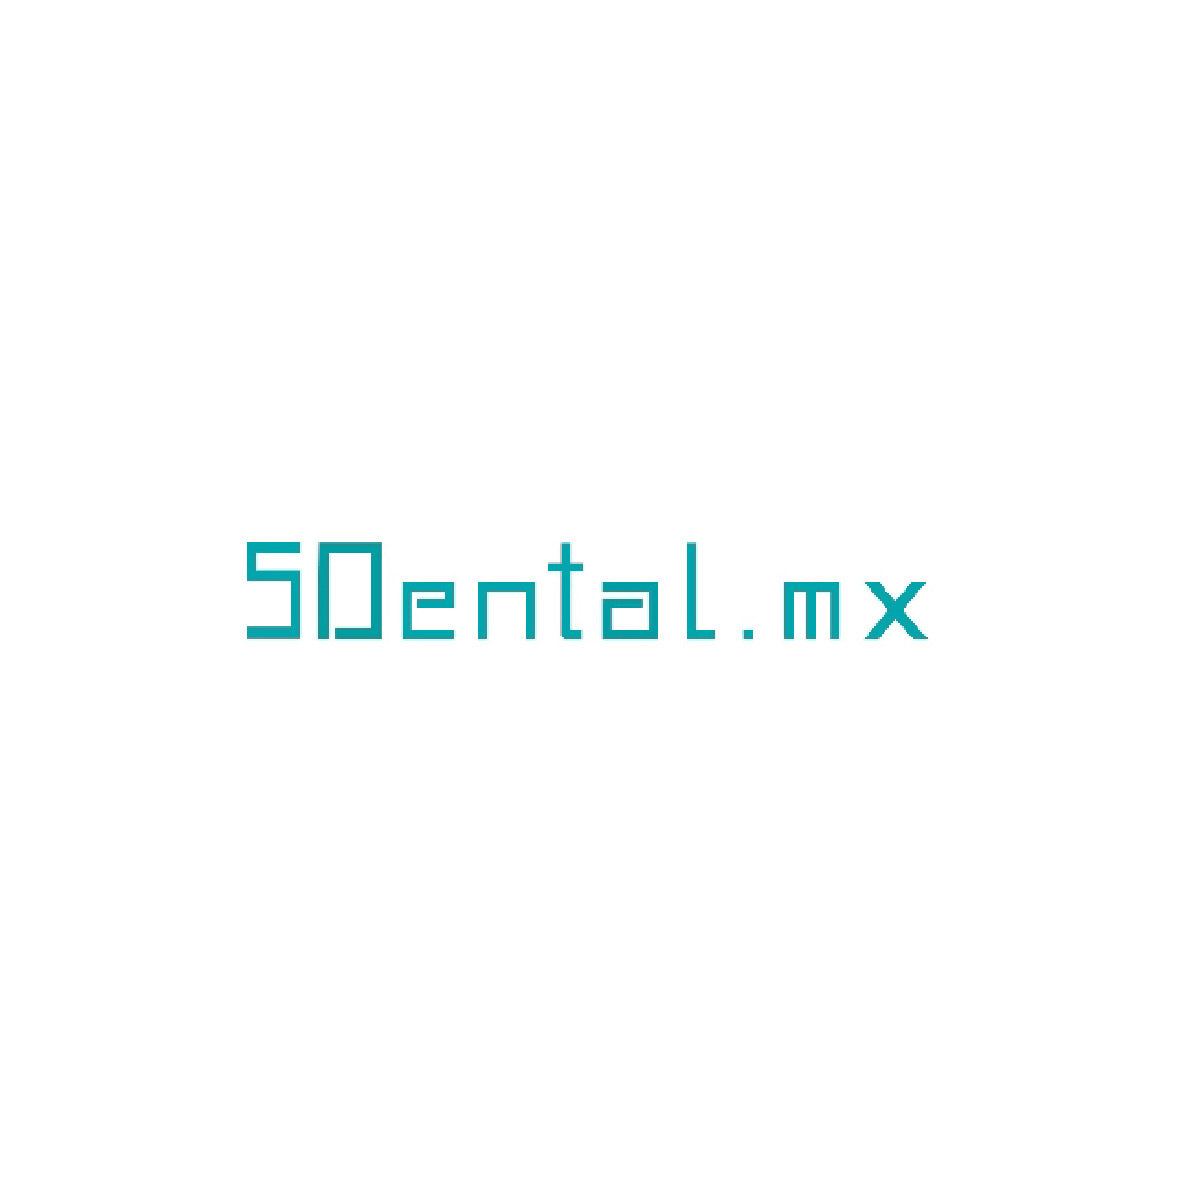 Productos en existencia SDental.mx